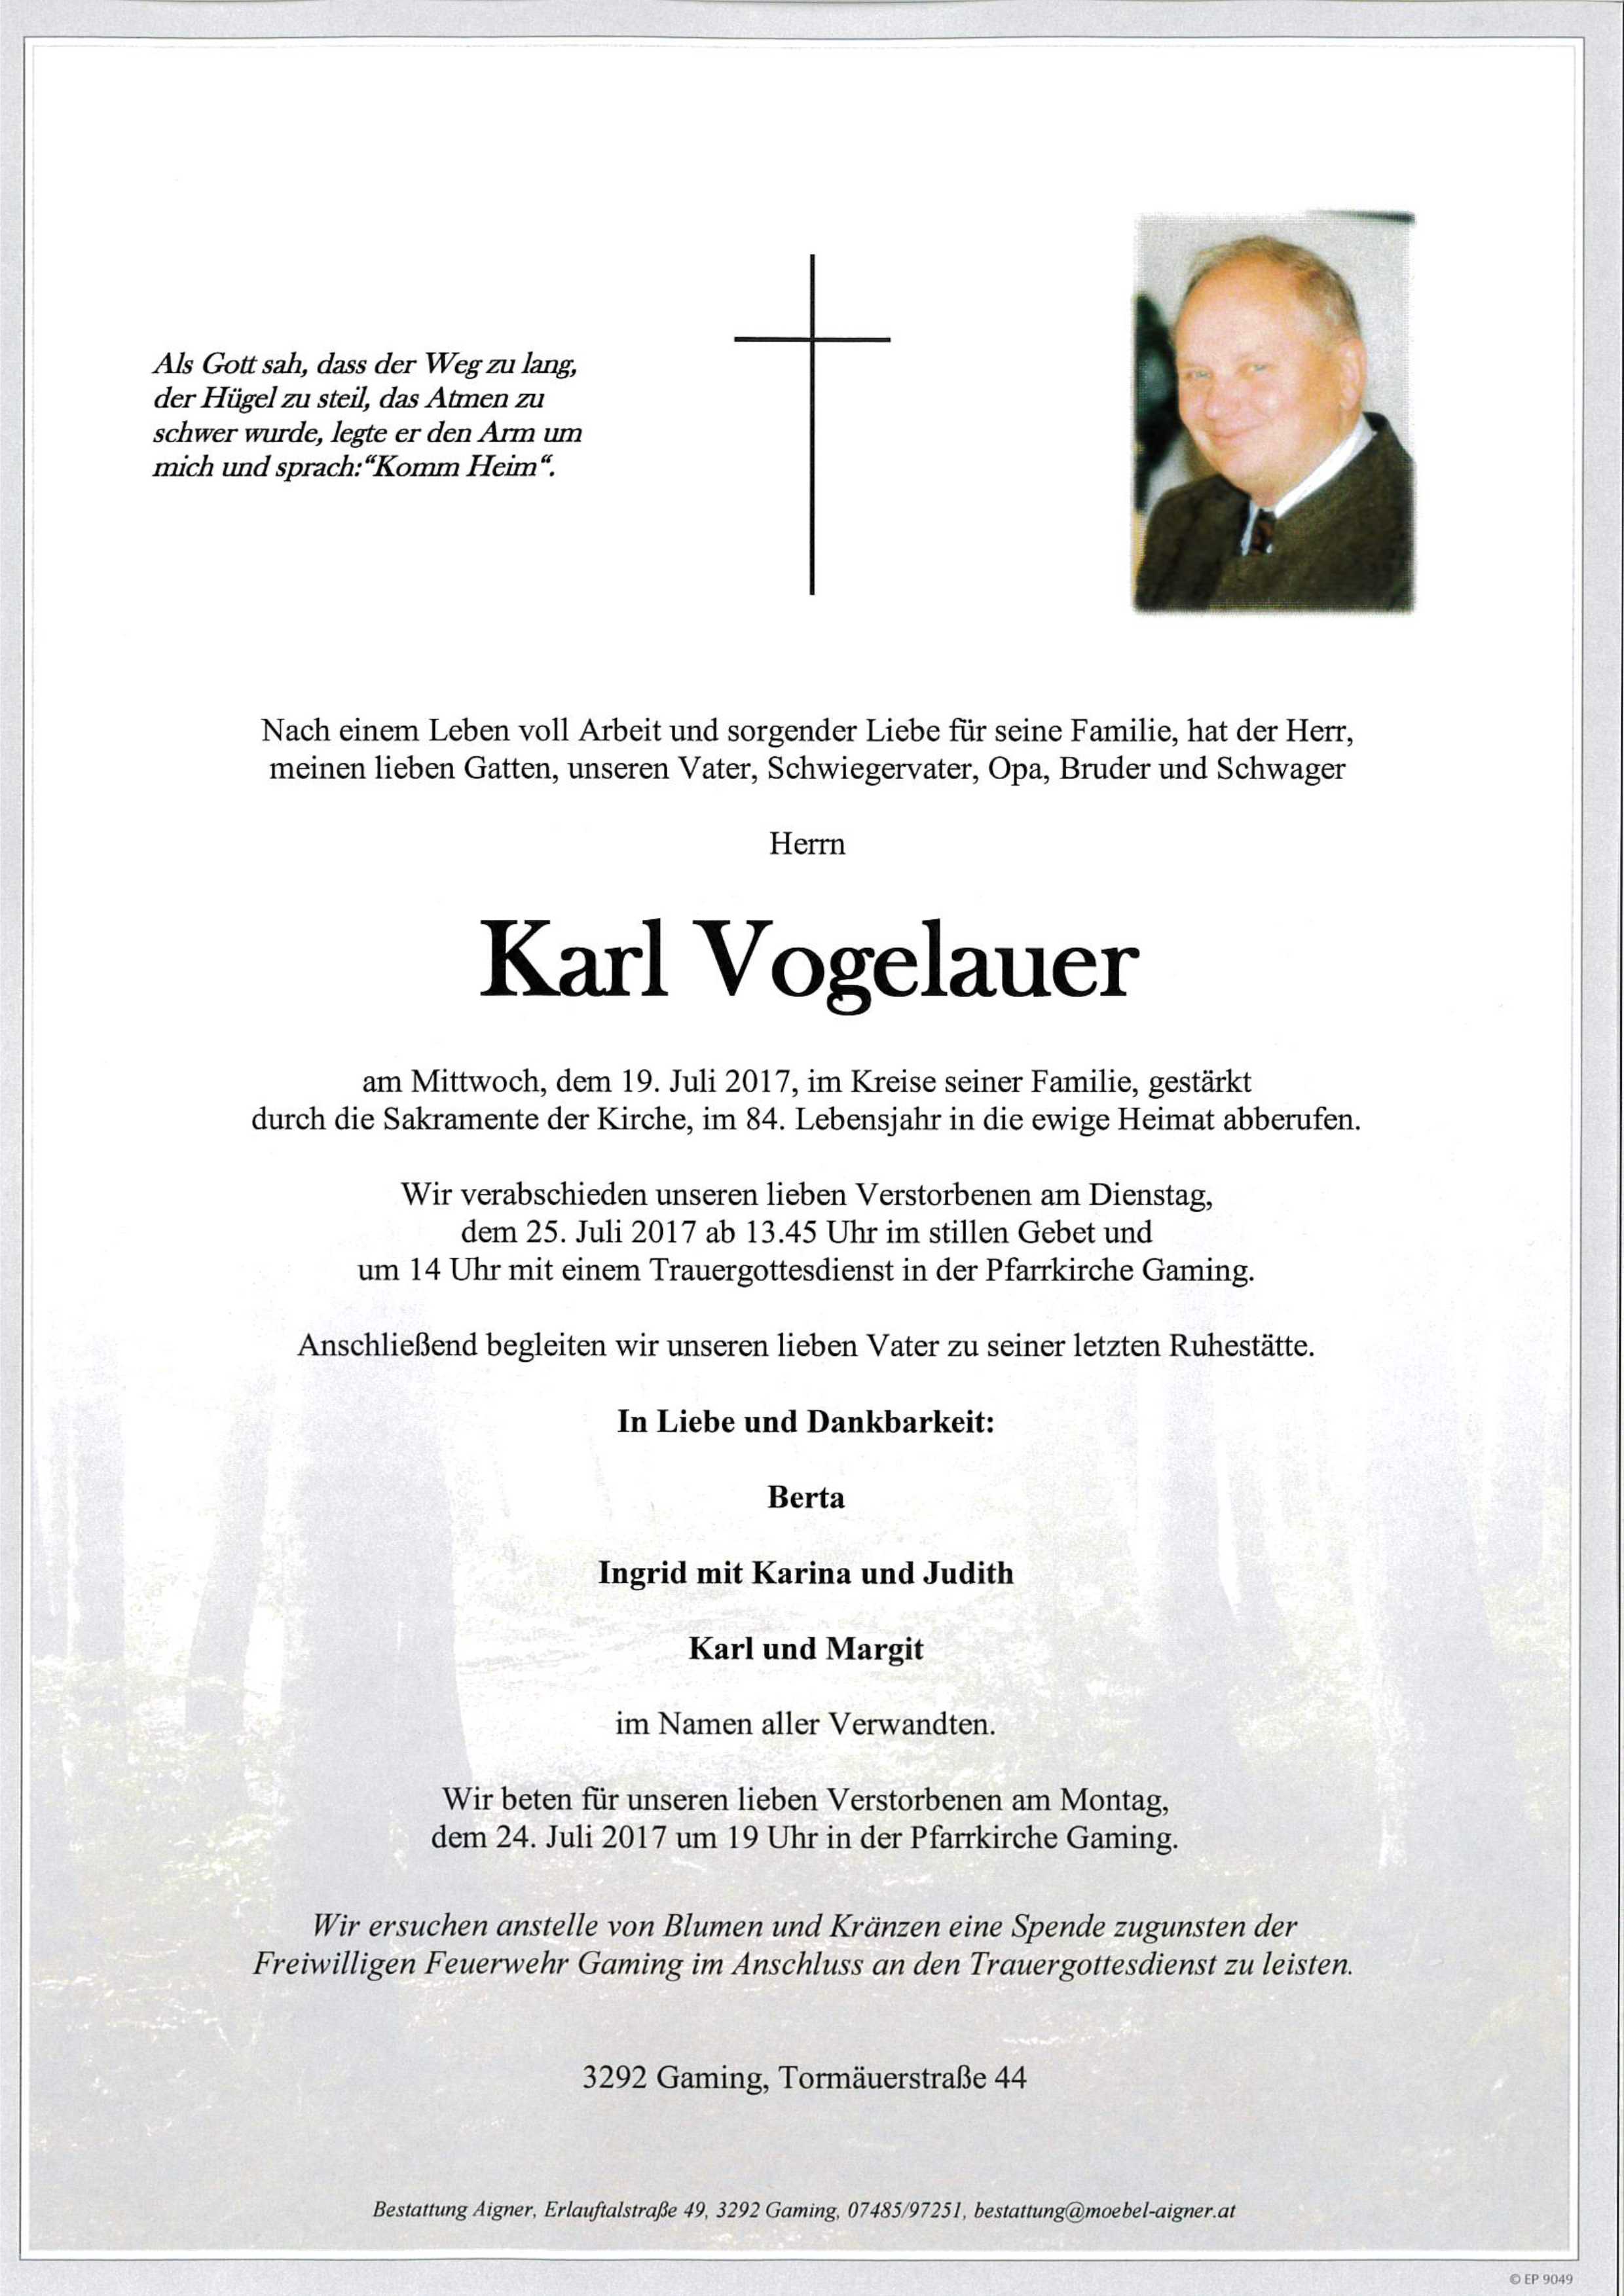 Karl Vogelauer